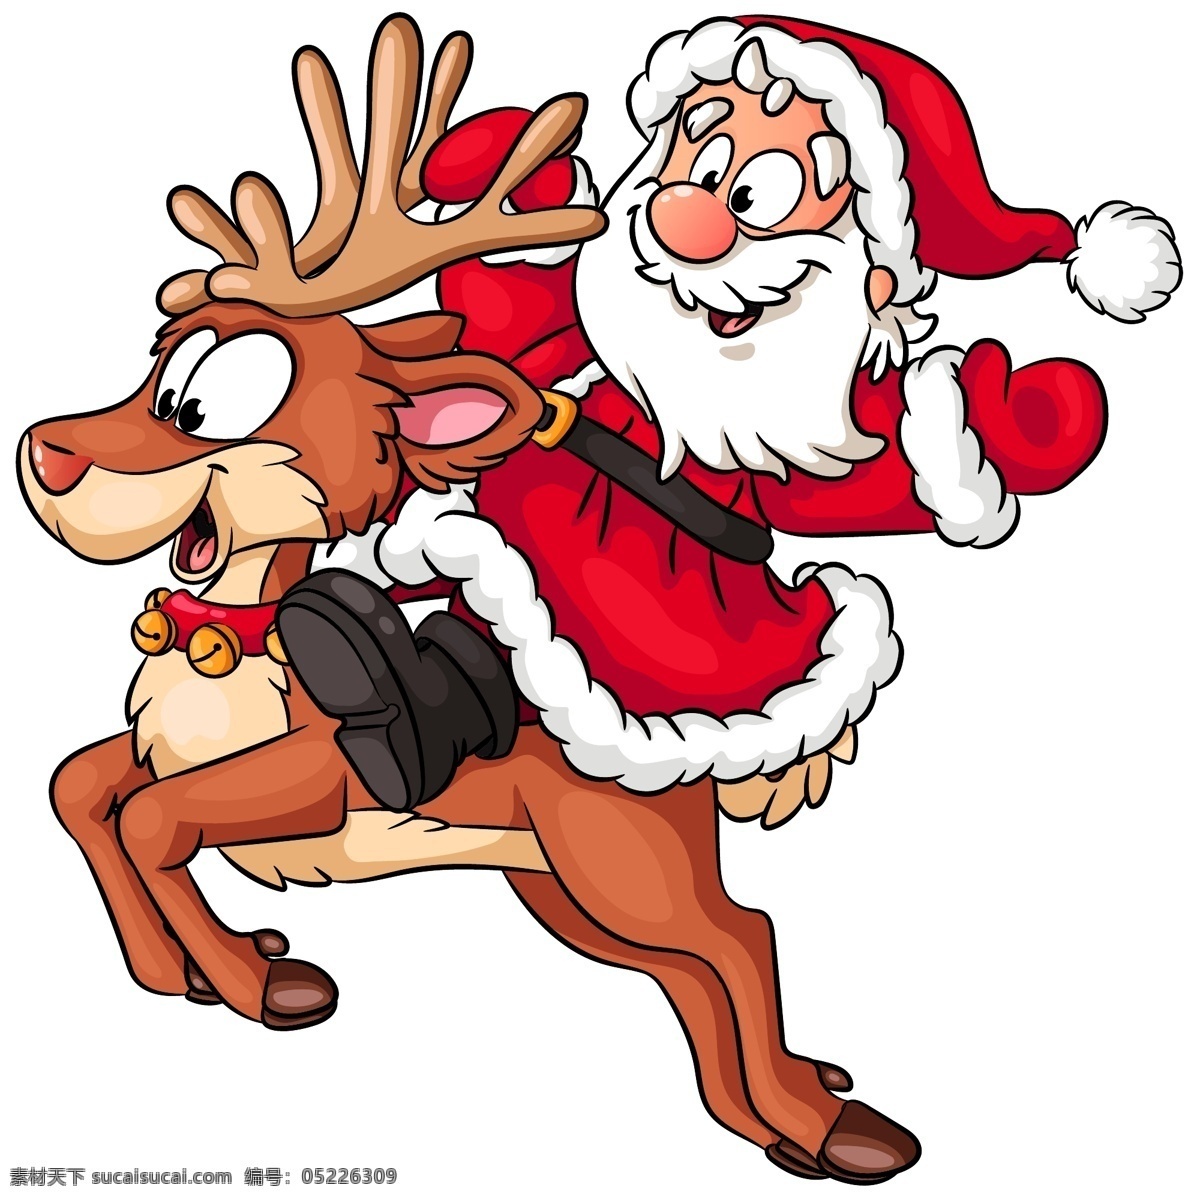 圣诞老人与鹿 圣诞老人 鹿 人物 圣诞节海报 圣诞节招贴 圣诞节主题 圣诞节广告 文化艺术 节日庆祝